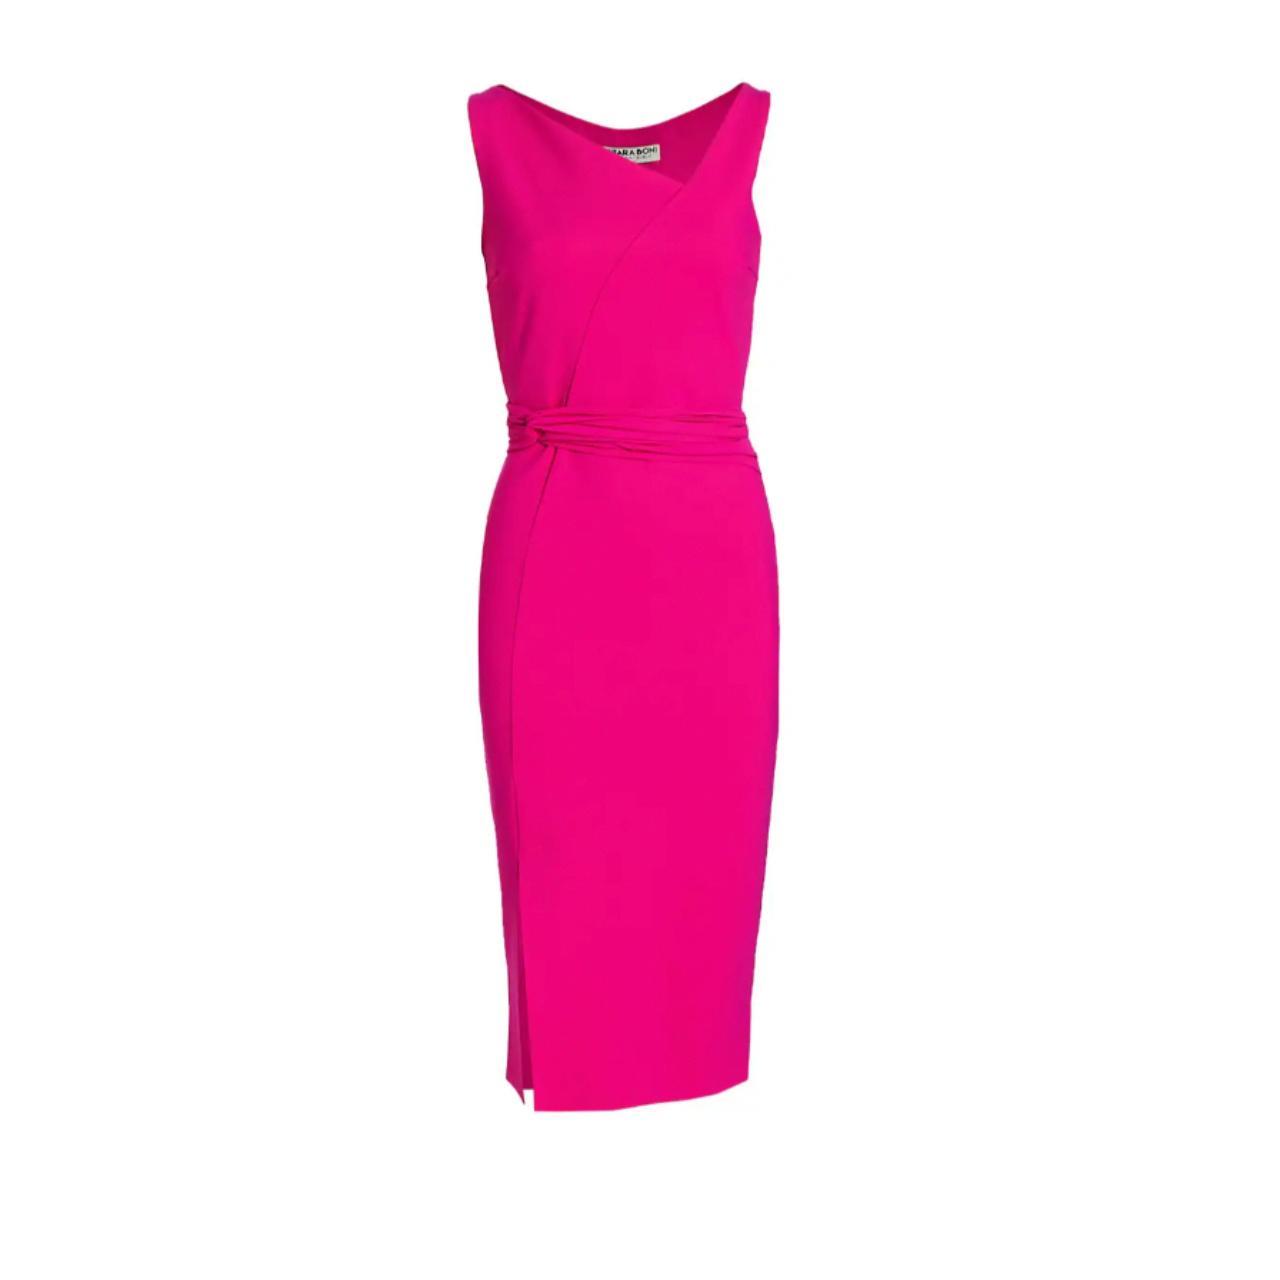 Chiara Boni La Petite Robe Women's Pink Dress